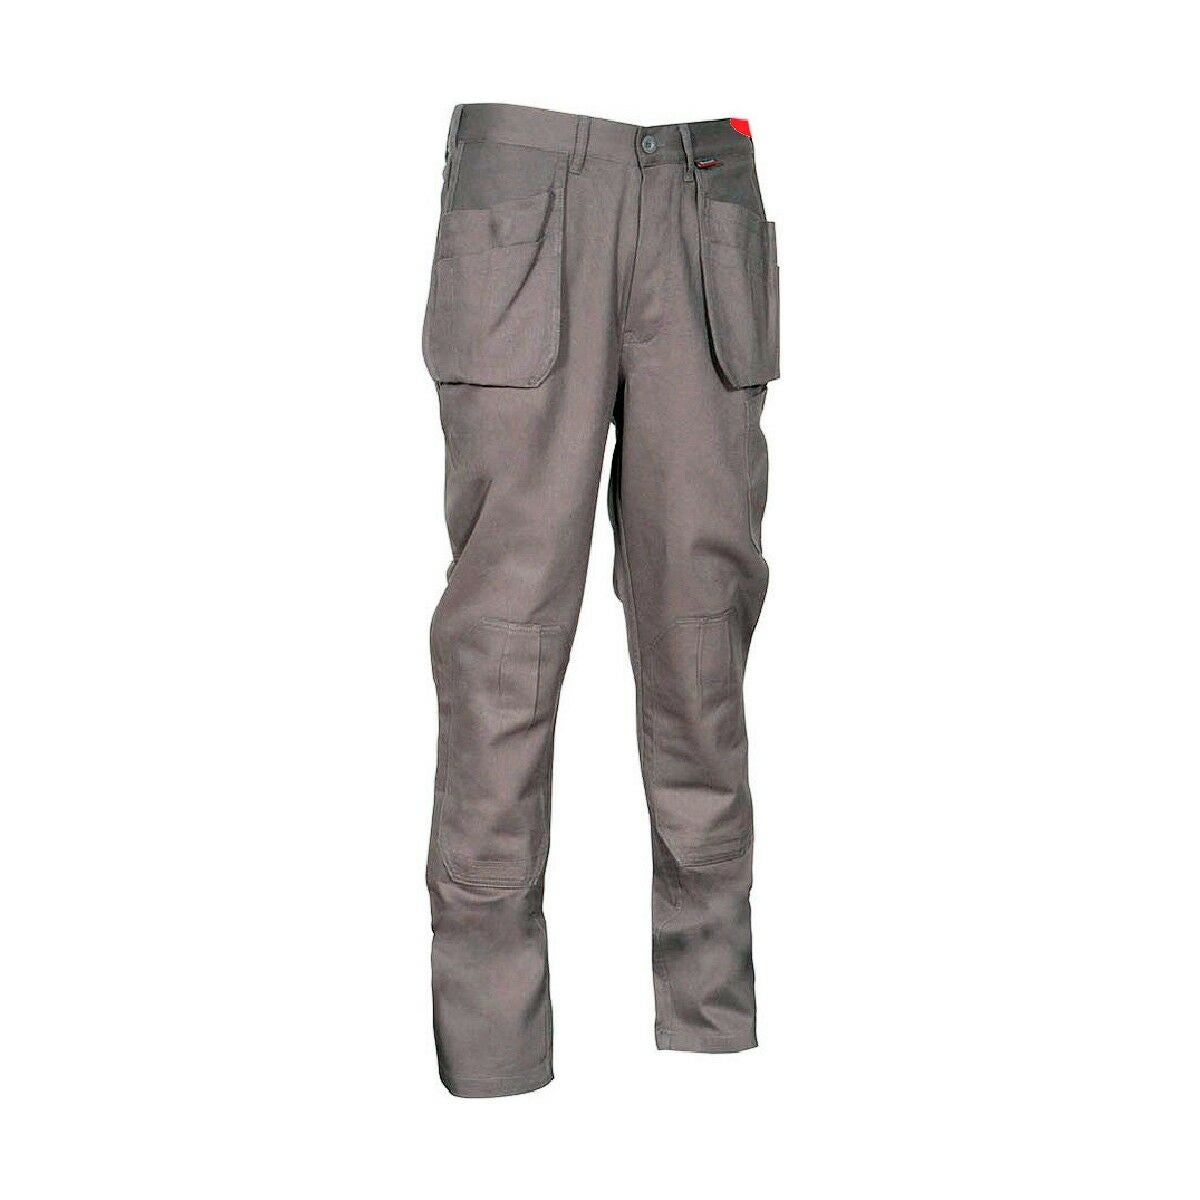 Pantalones Largos DeTrabajo, Multibolsillos, Resistentes, Rodilla  Reforzada, Gris/Amarillo Talla 50/52 XL